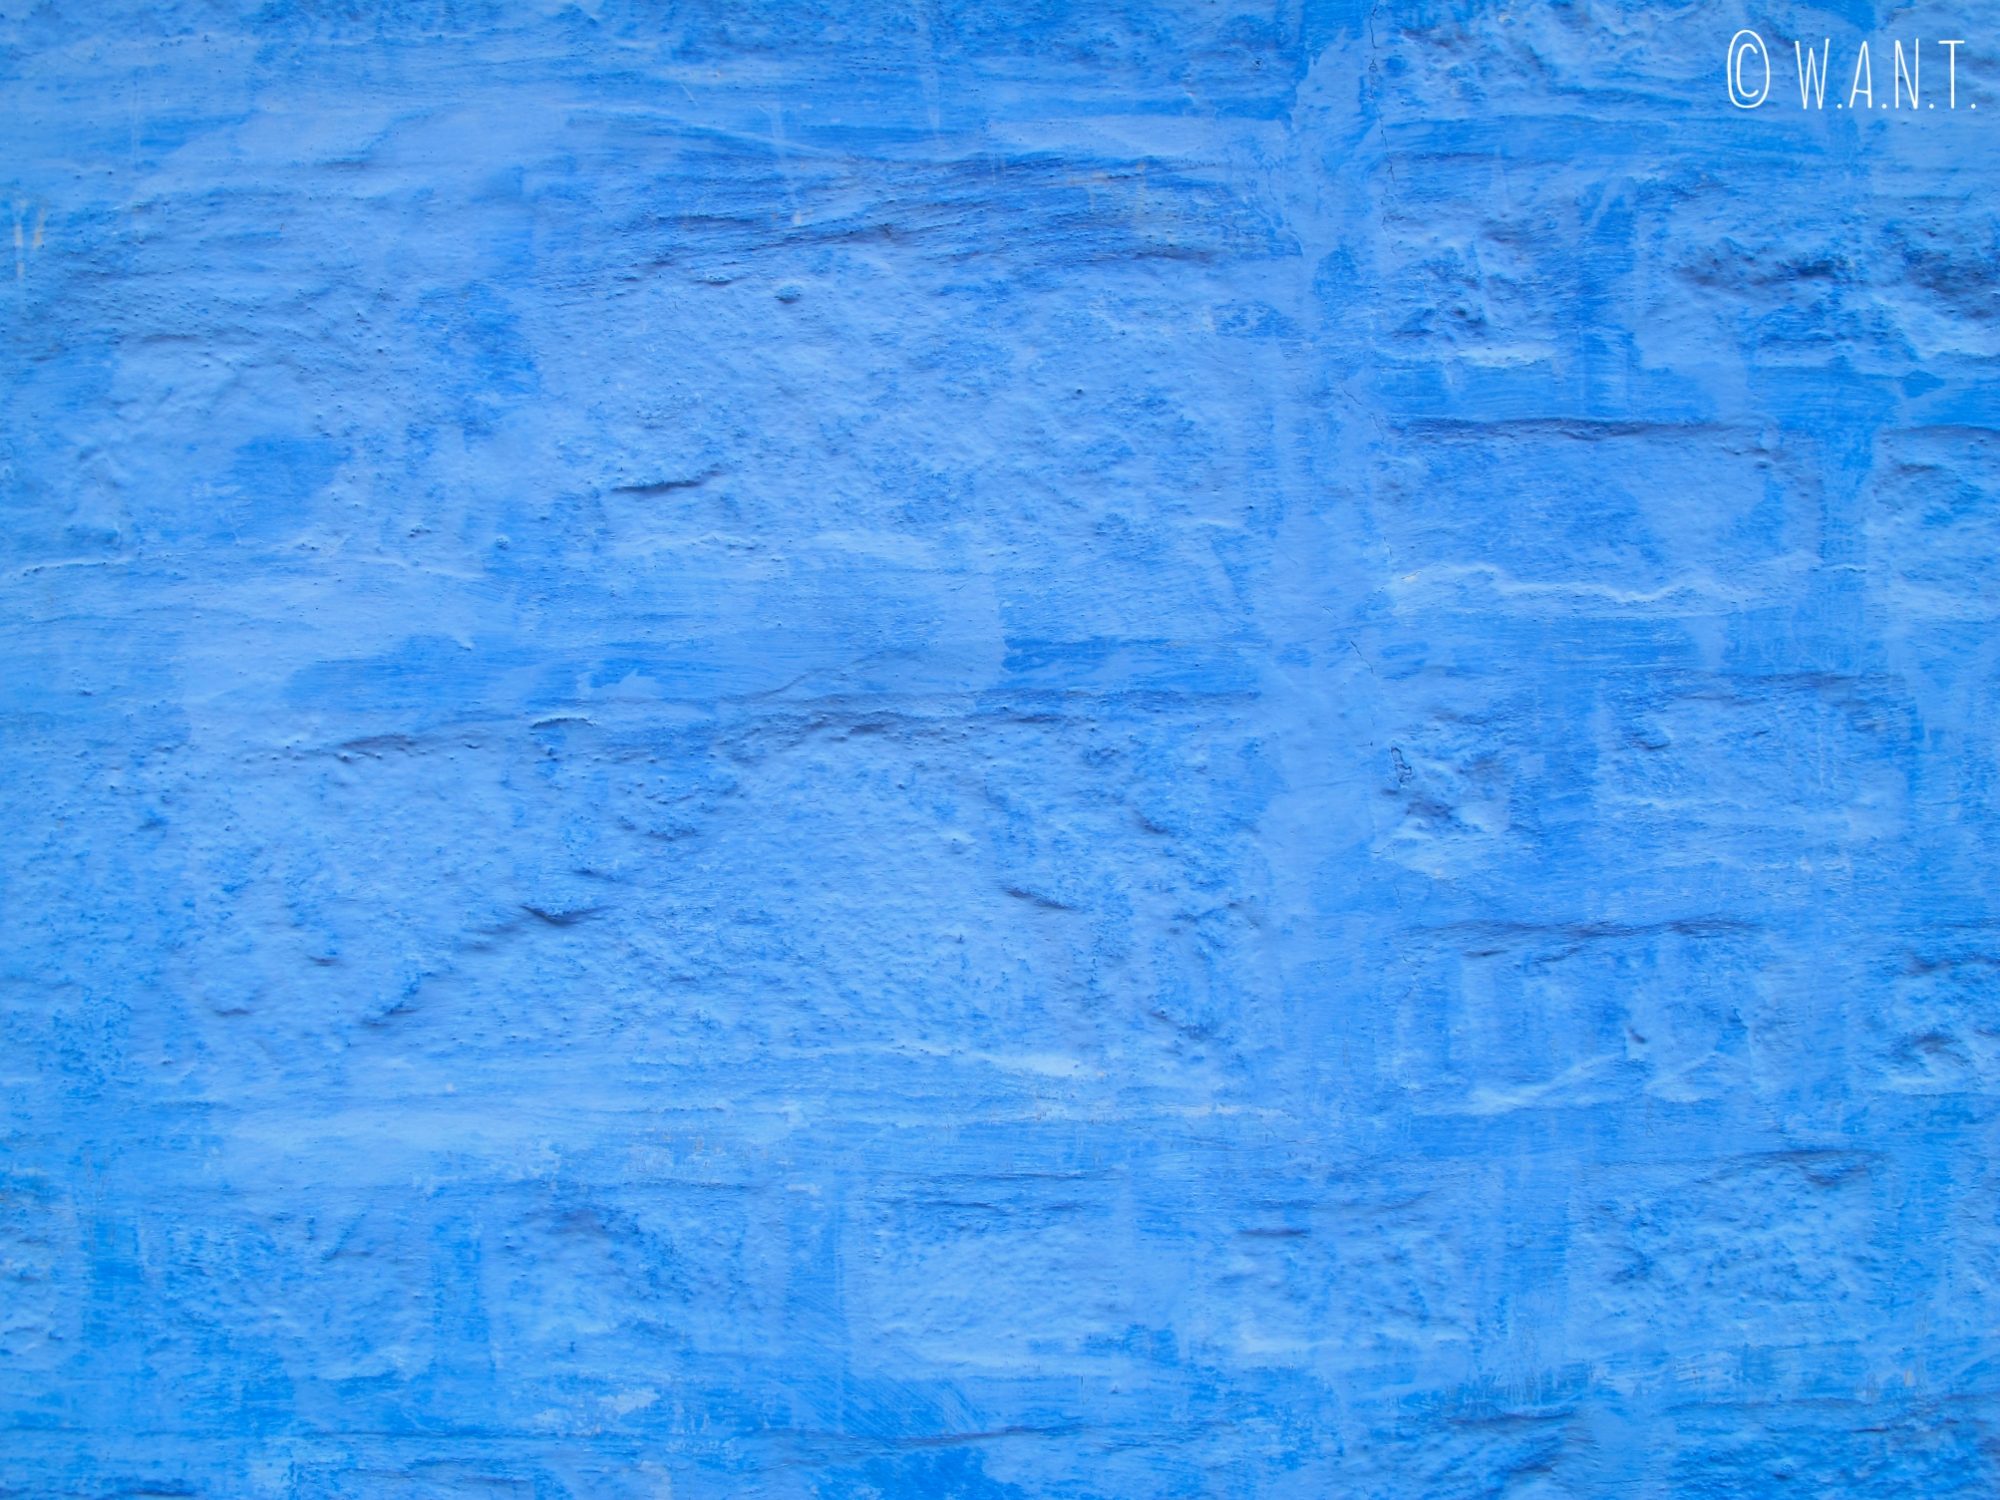 Façade bleue des maisons de Jodhpur, appelée aussi la cité bleue